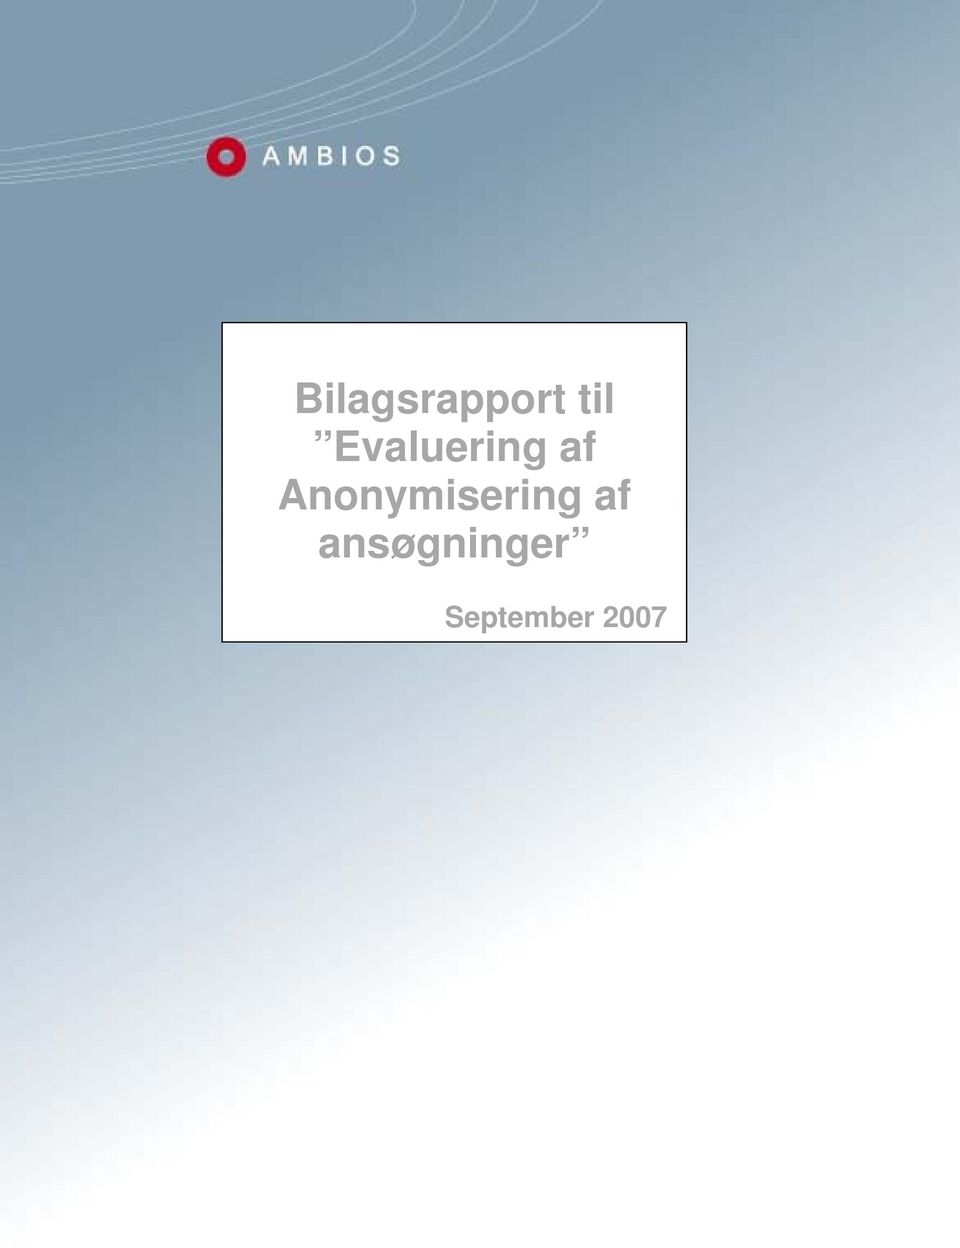 September 2007 Bilagsrapport